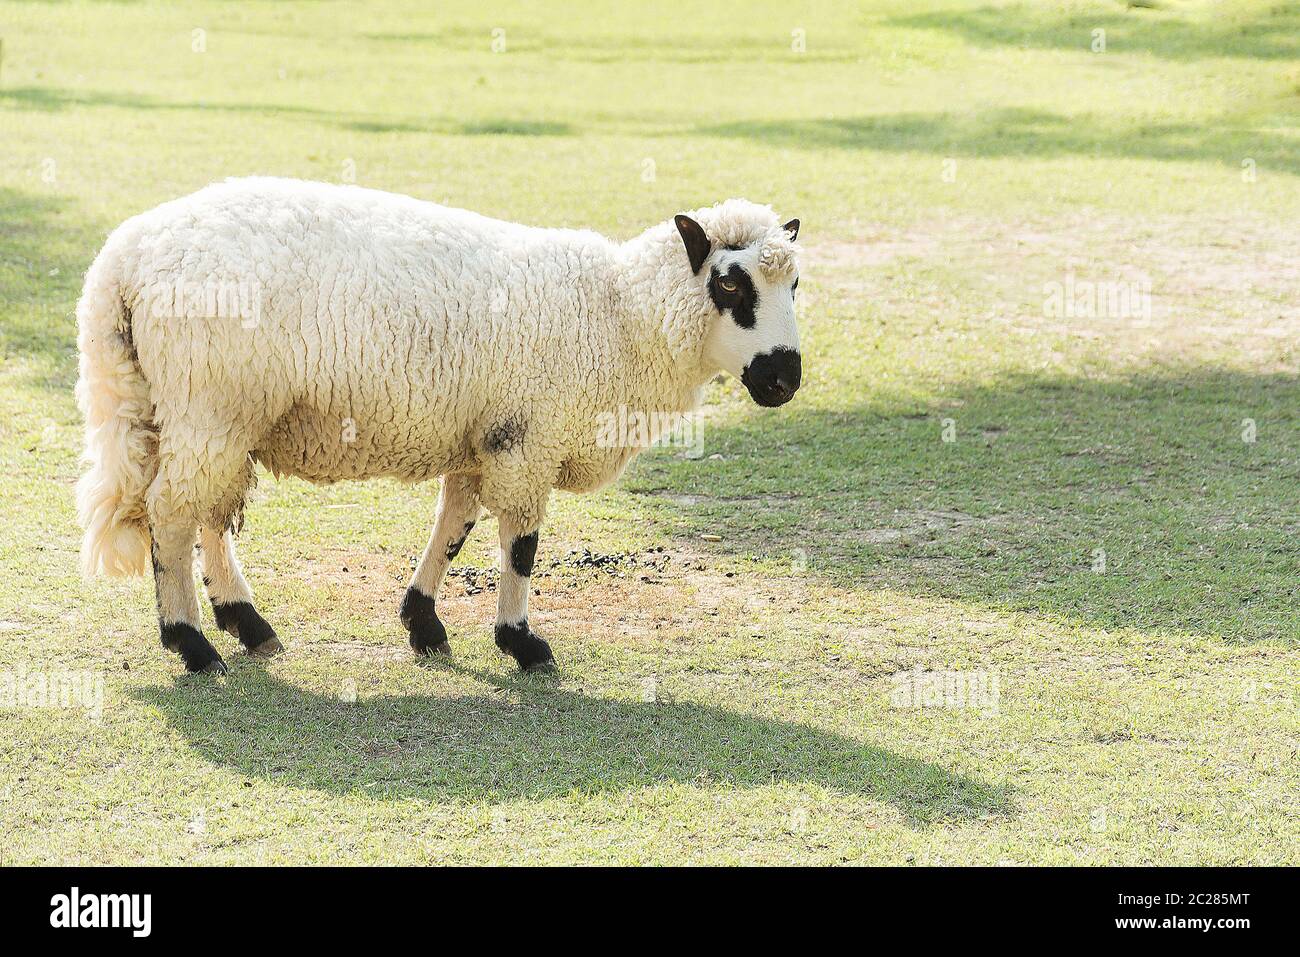 Kerry Hill moutons dans les champs d'herbe verte, de beaux moutons sur la prairie Banque D'Images